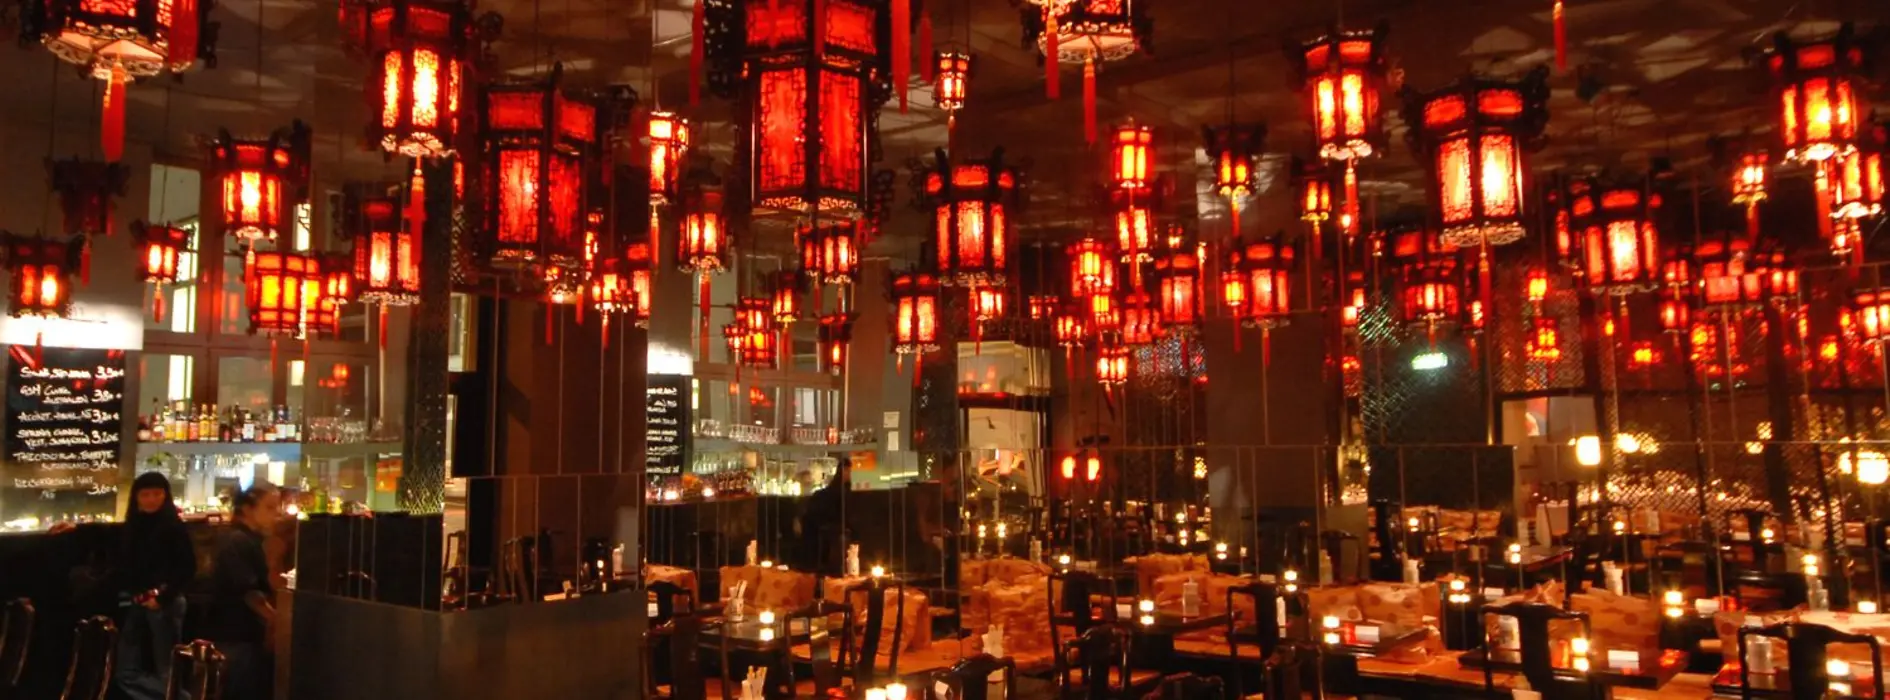 ShanghaiTan restaurant 